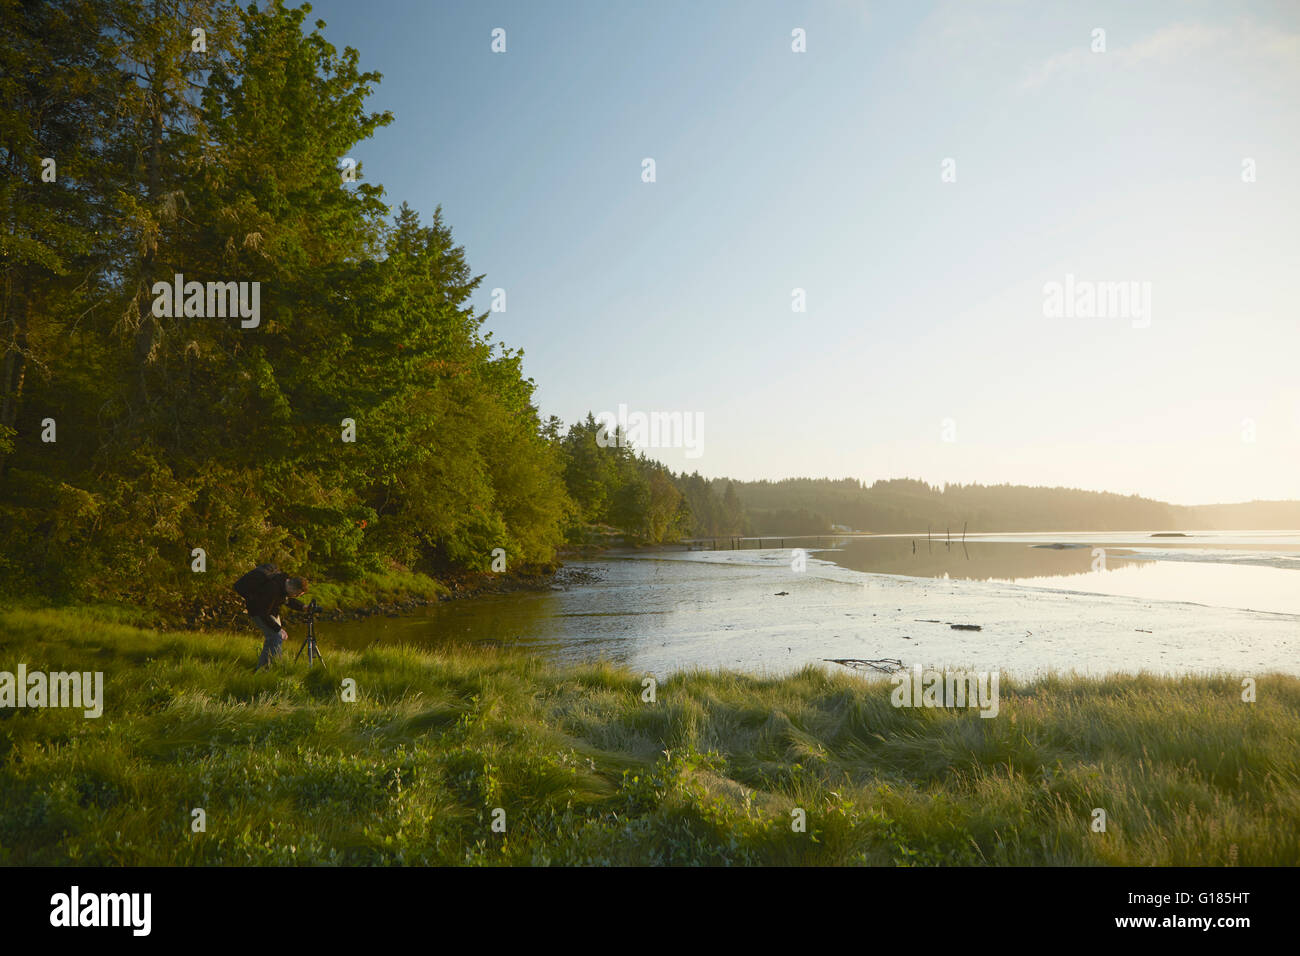 Man photographing coast at dusk, Puget Sound, Washington State, USA Stock Photo